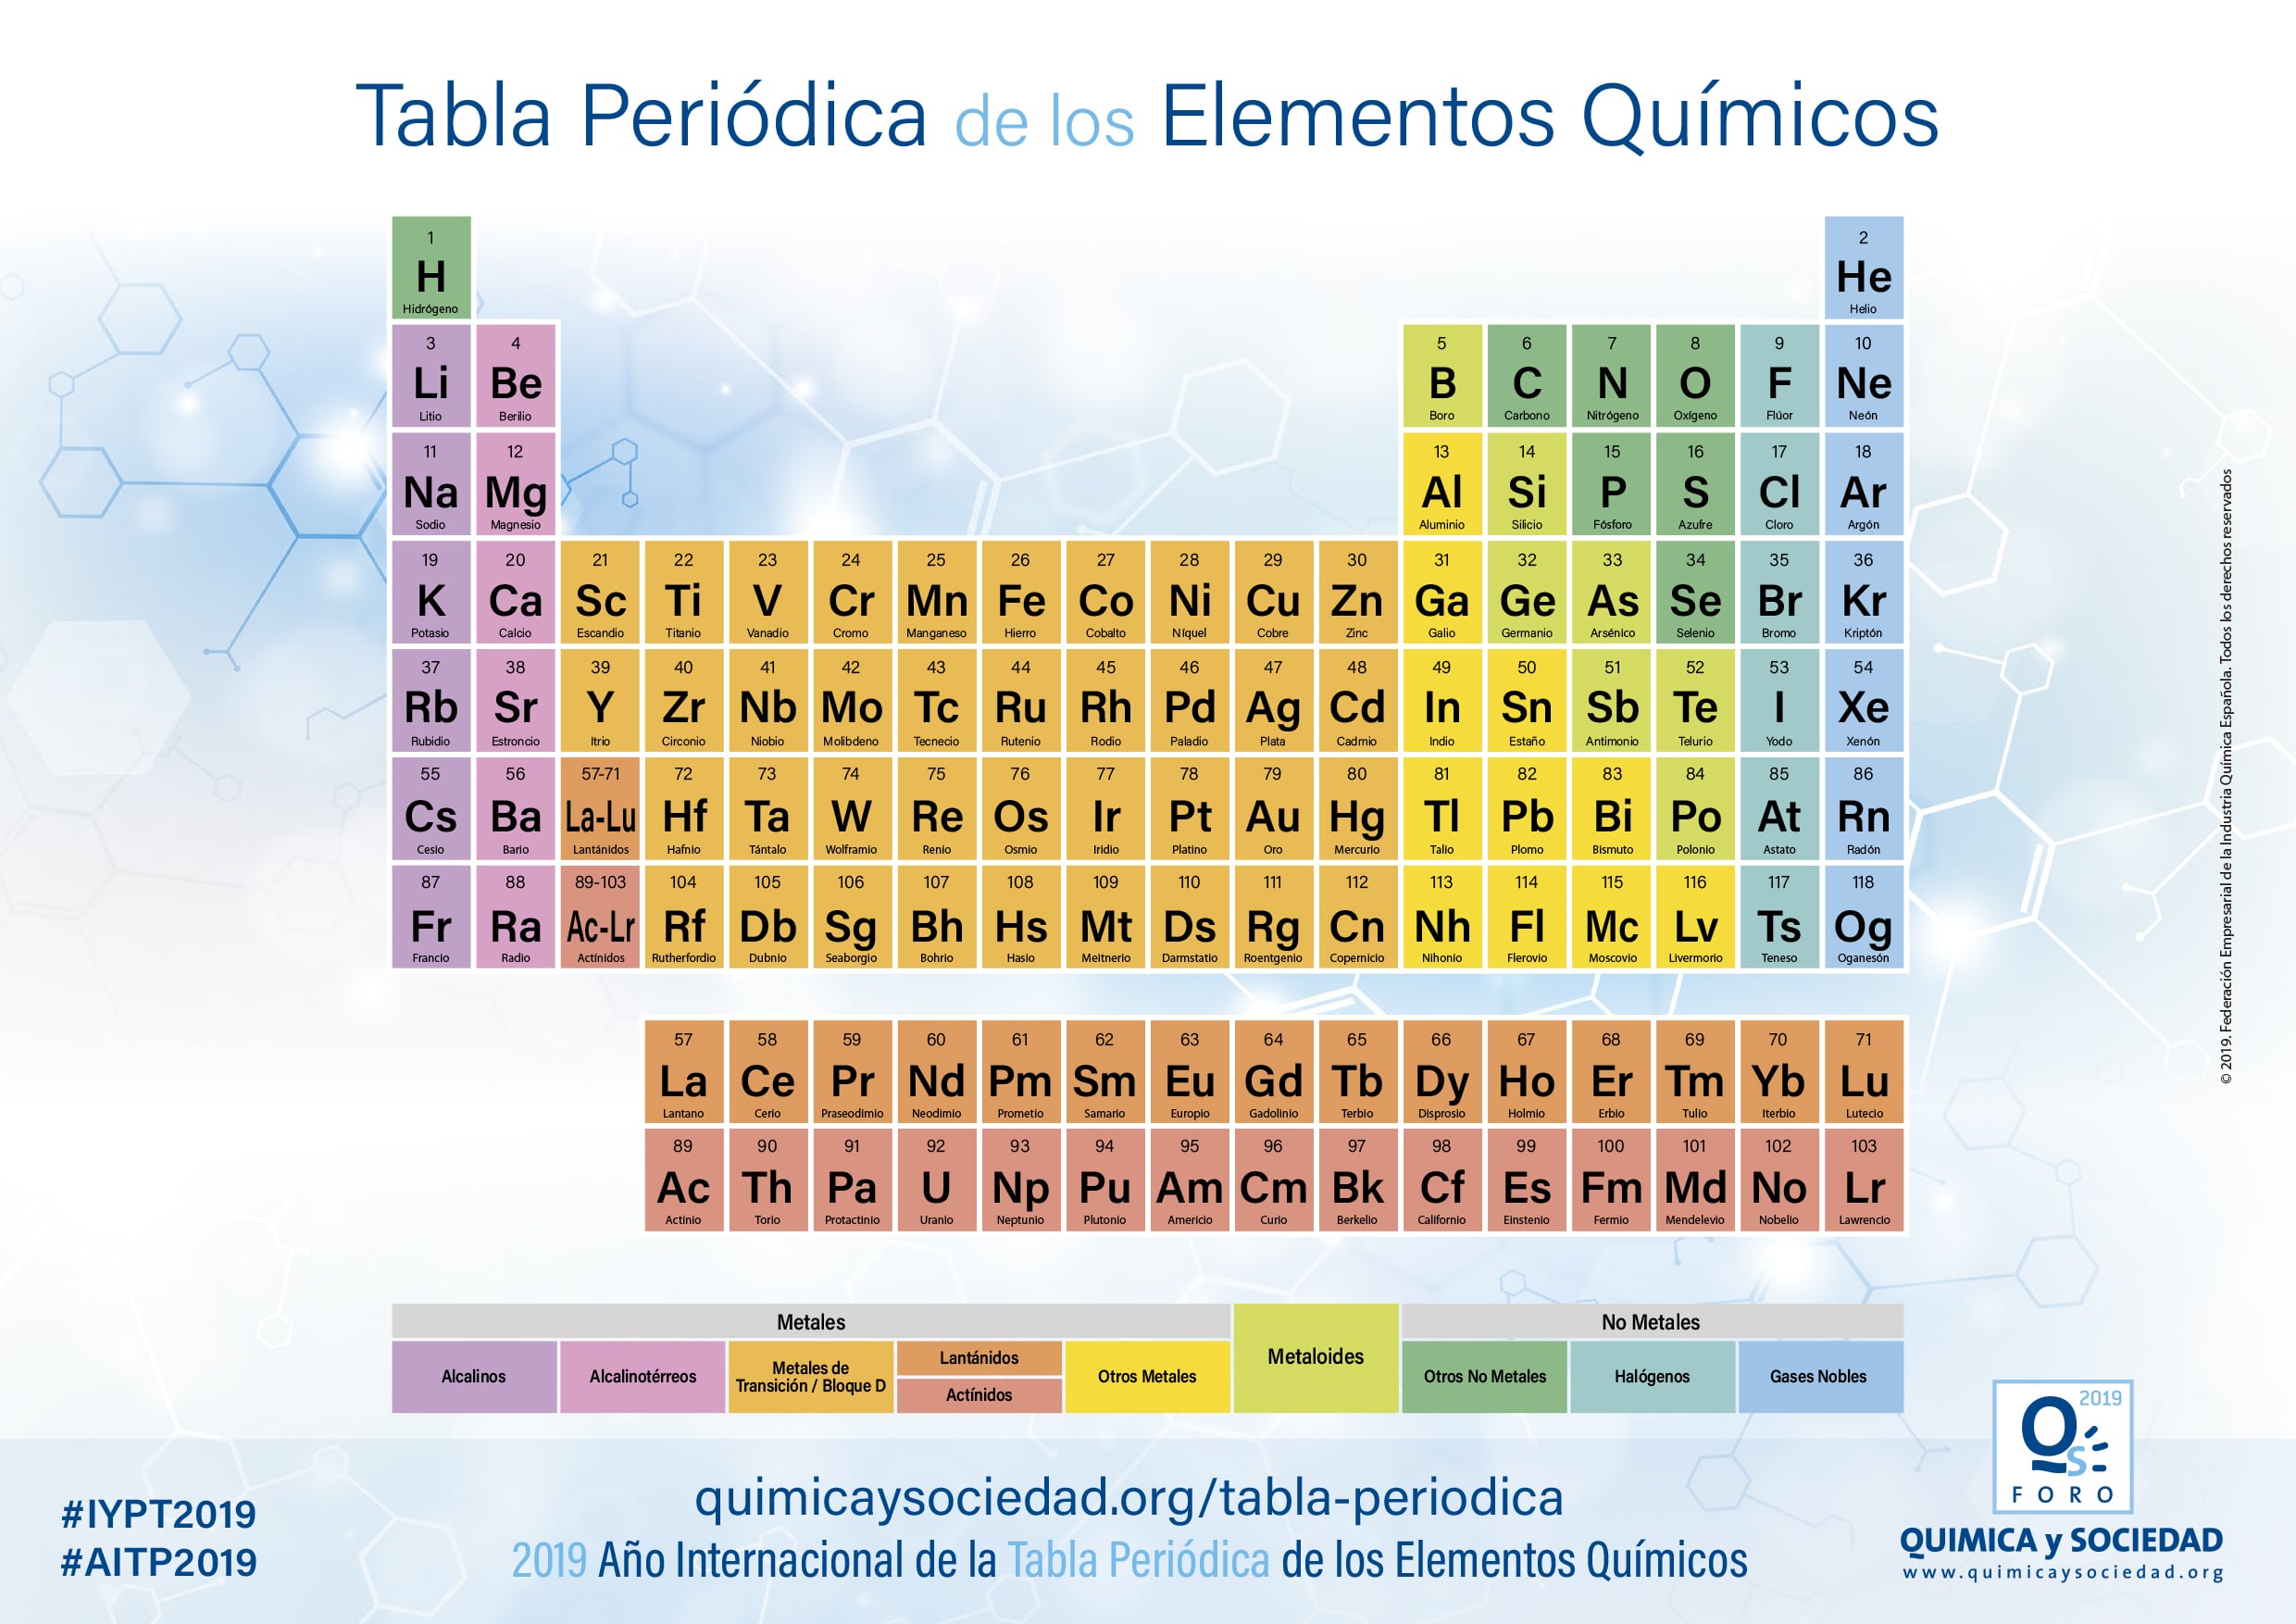 Anordnung Von Öffnen Leiter Clasificacion De Los Elementos Quimicos En